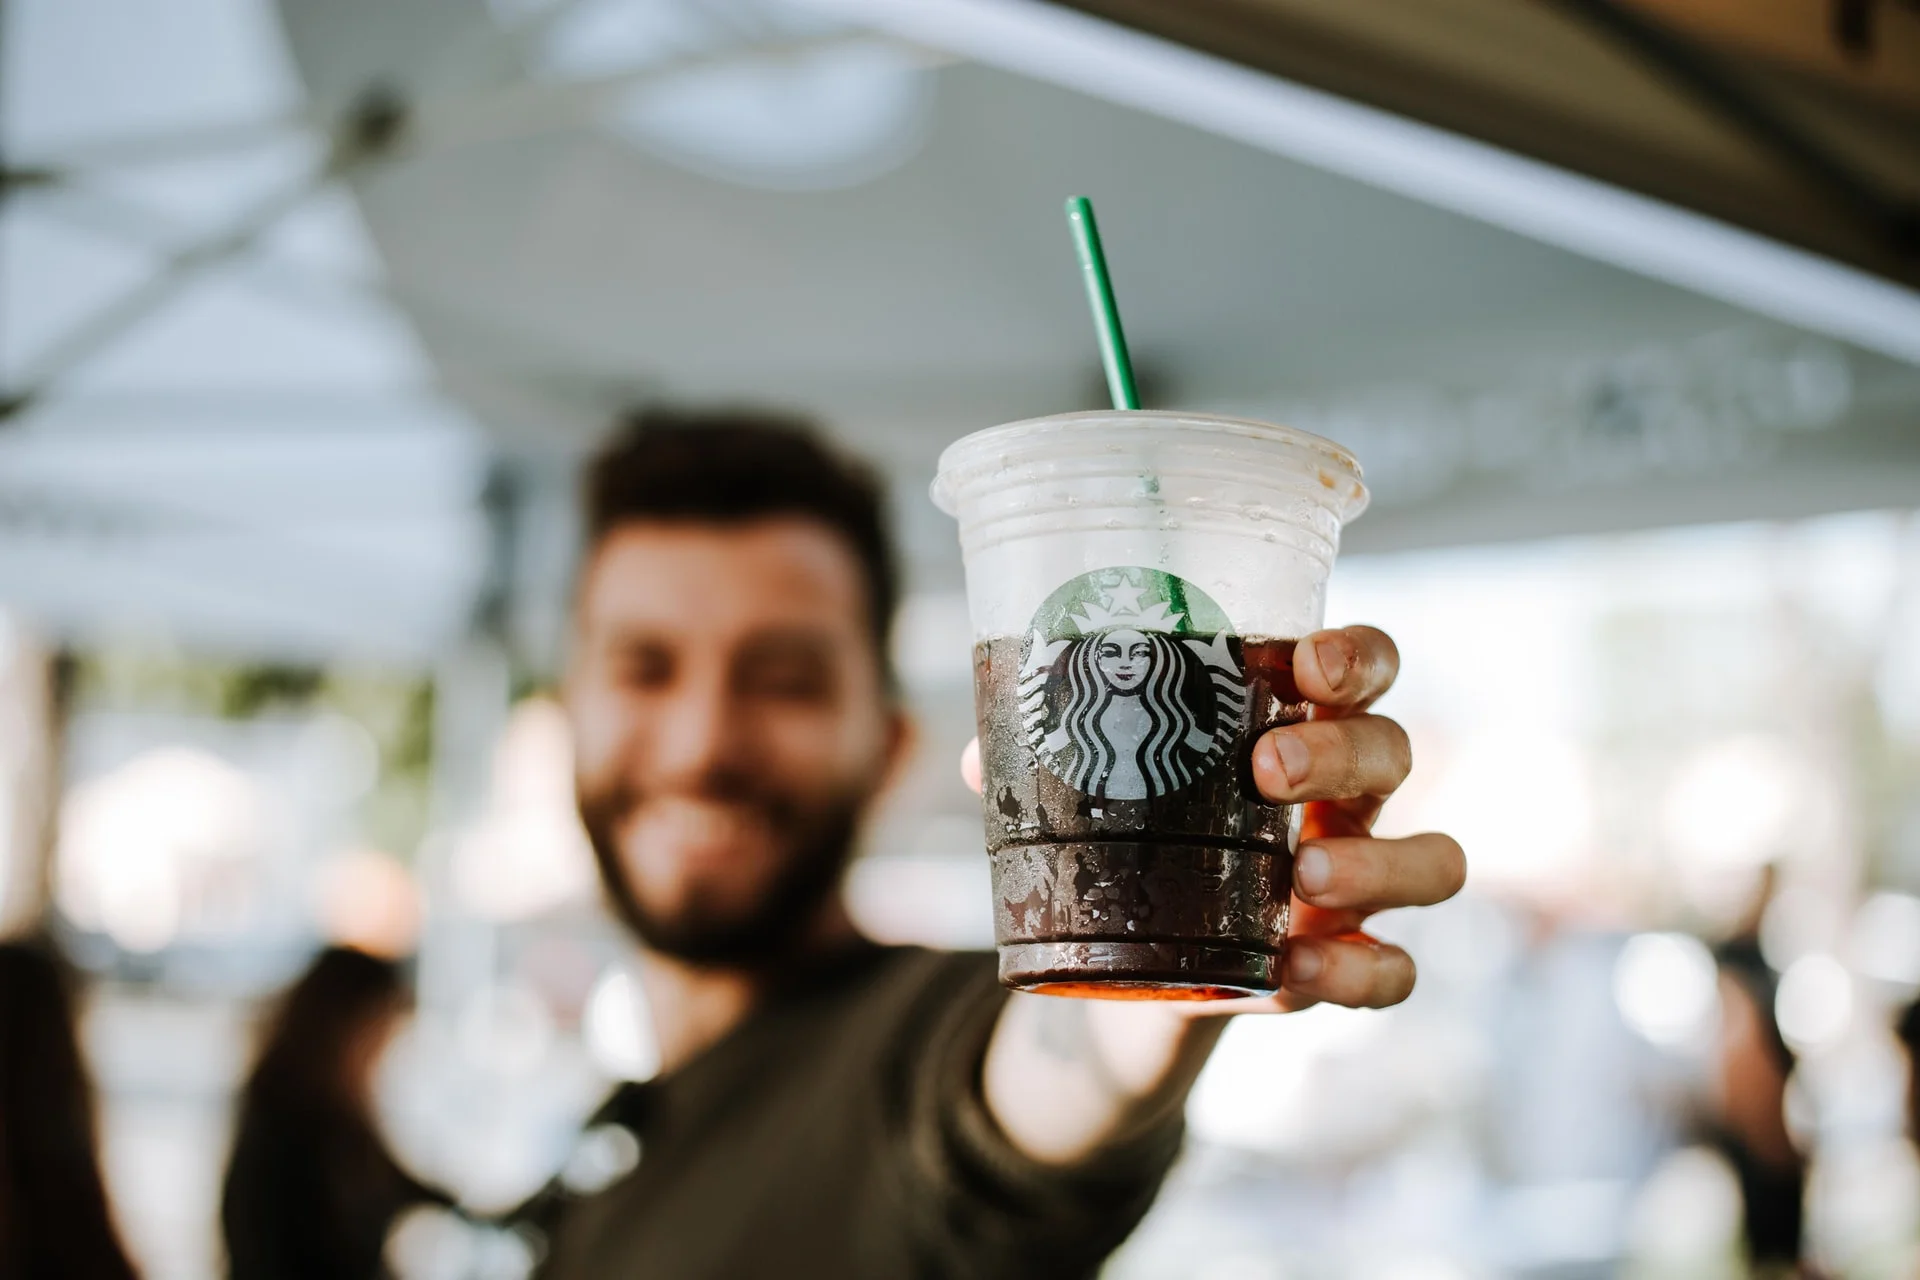 Характер такий: працівника Starbucks затримали, бо він плював у каву поліцейським - фото 485956